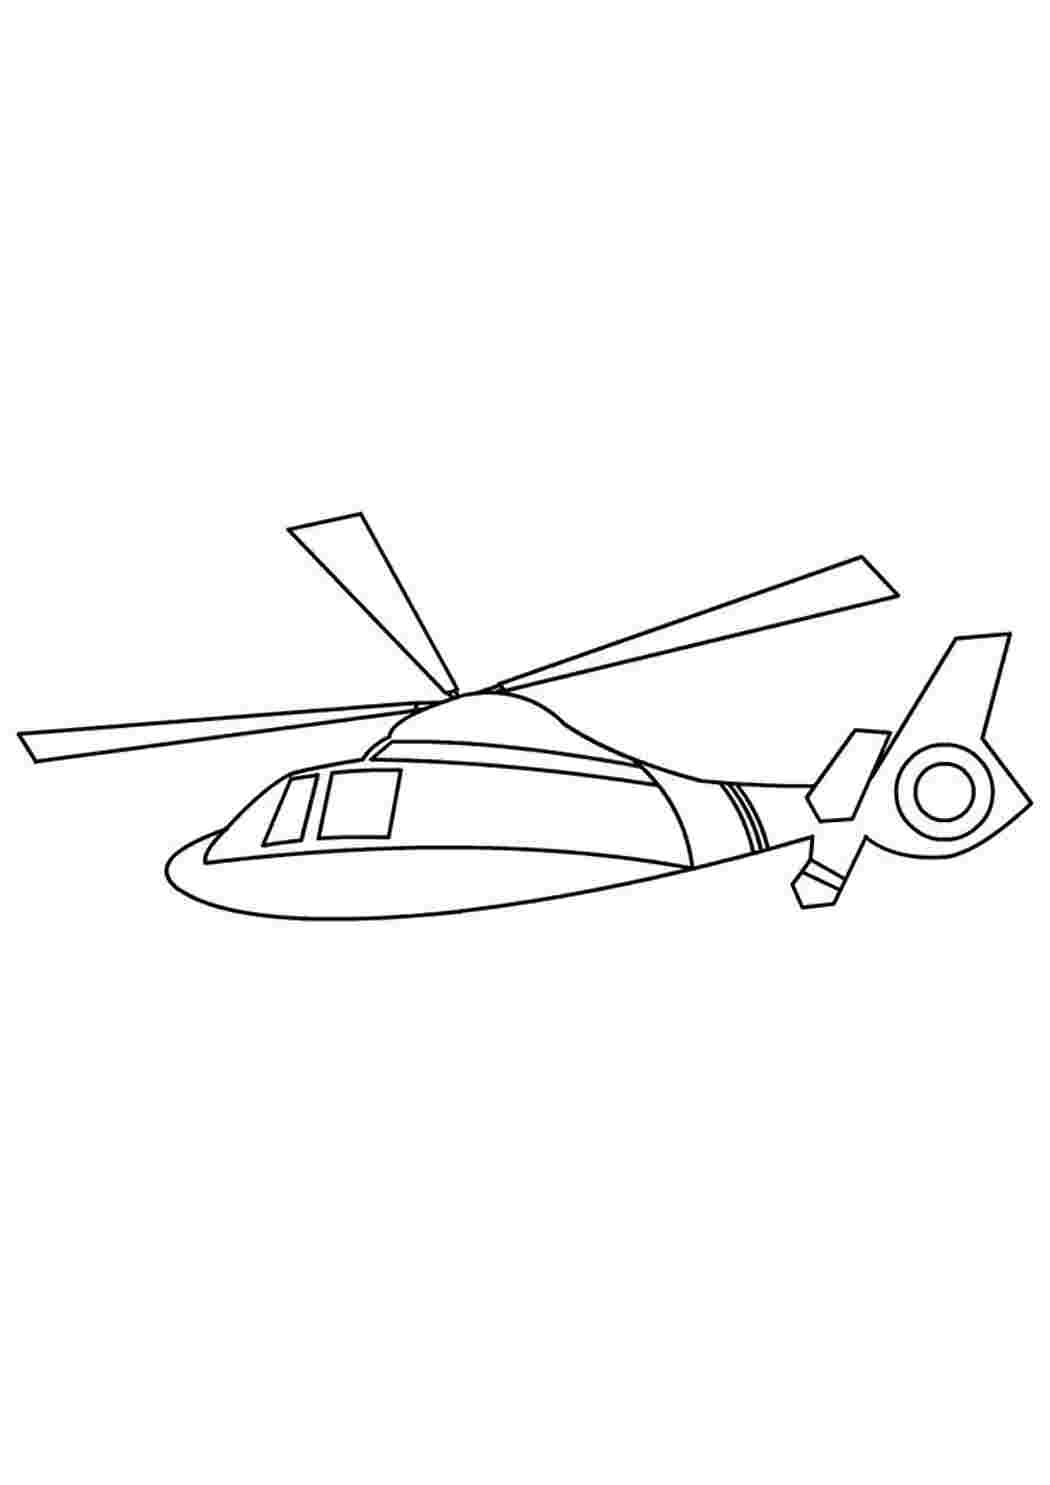 Раскраски Раскраска Вертолет военный онлайн для мальчиков вертолет вертолет